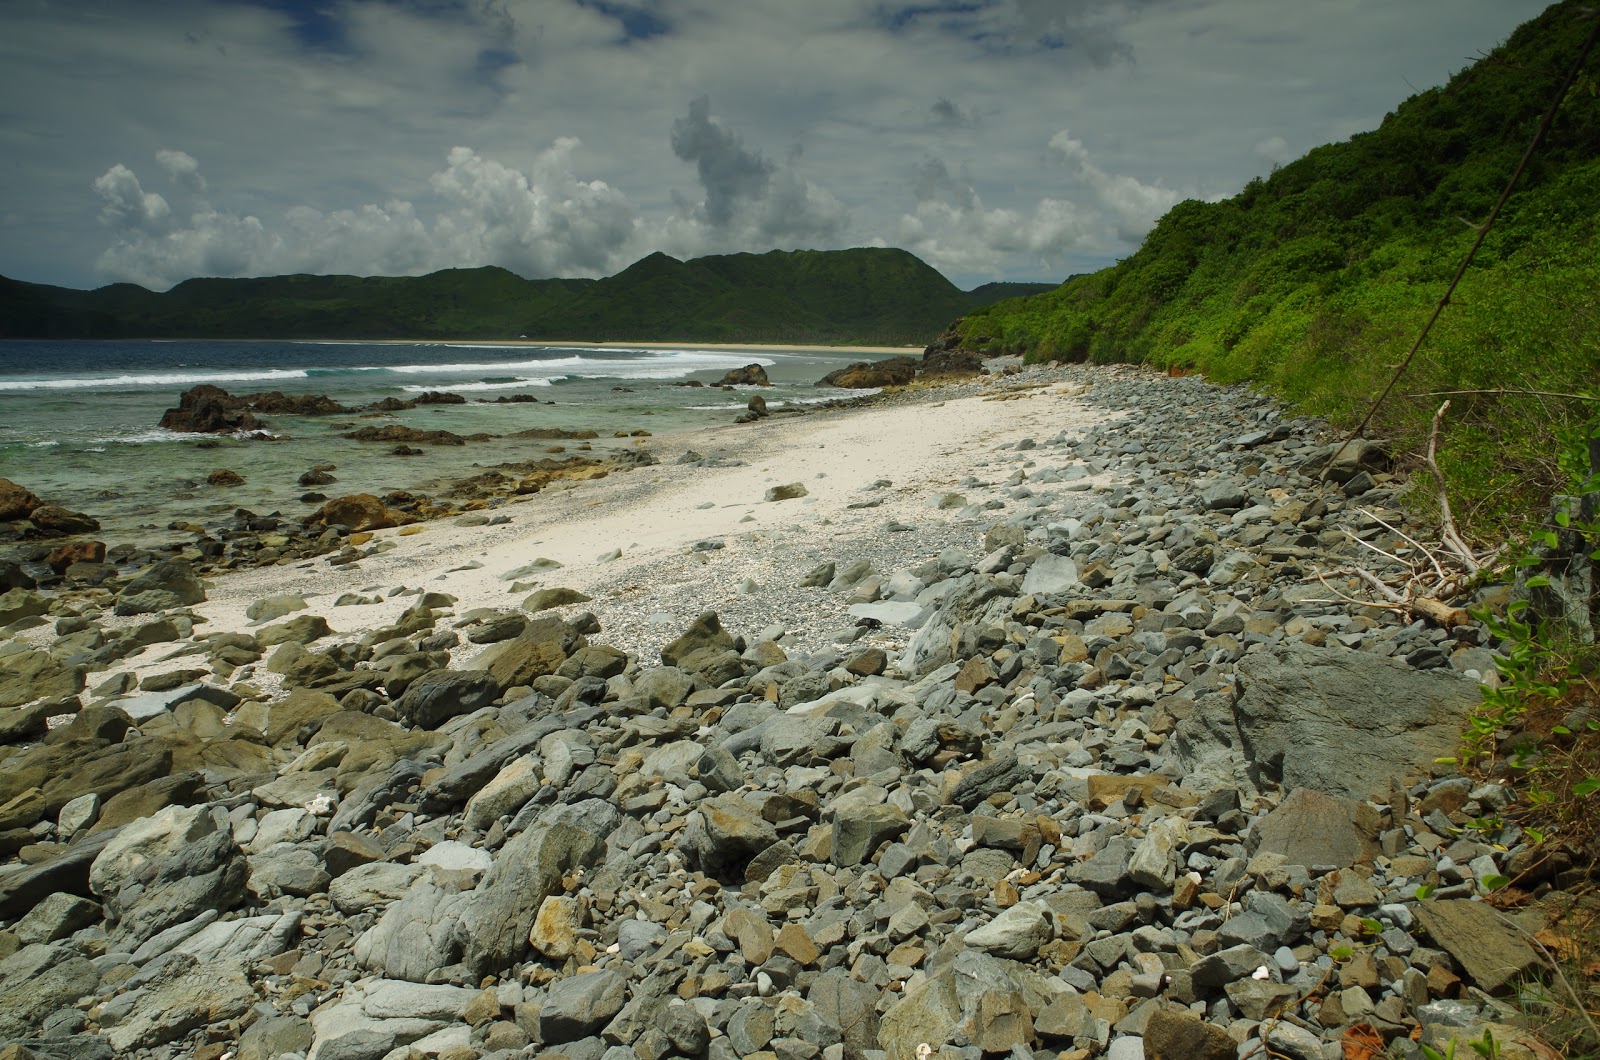 Fotografie cu Batu Bereng Beach cu o suprafață de nisip strălucitor și pietre